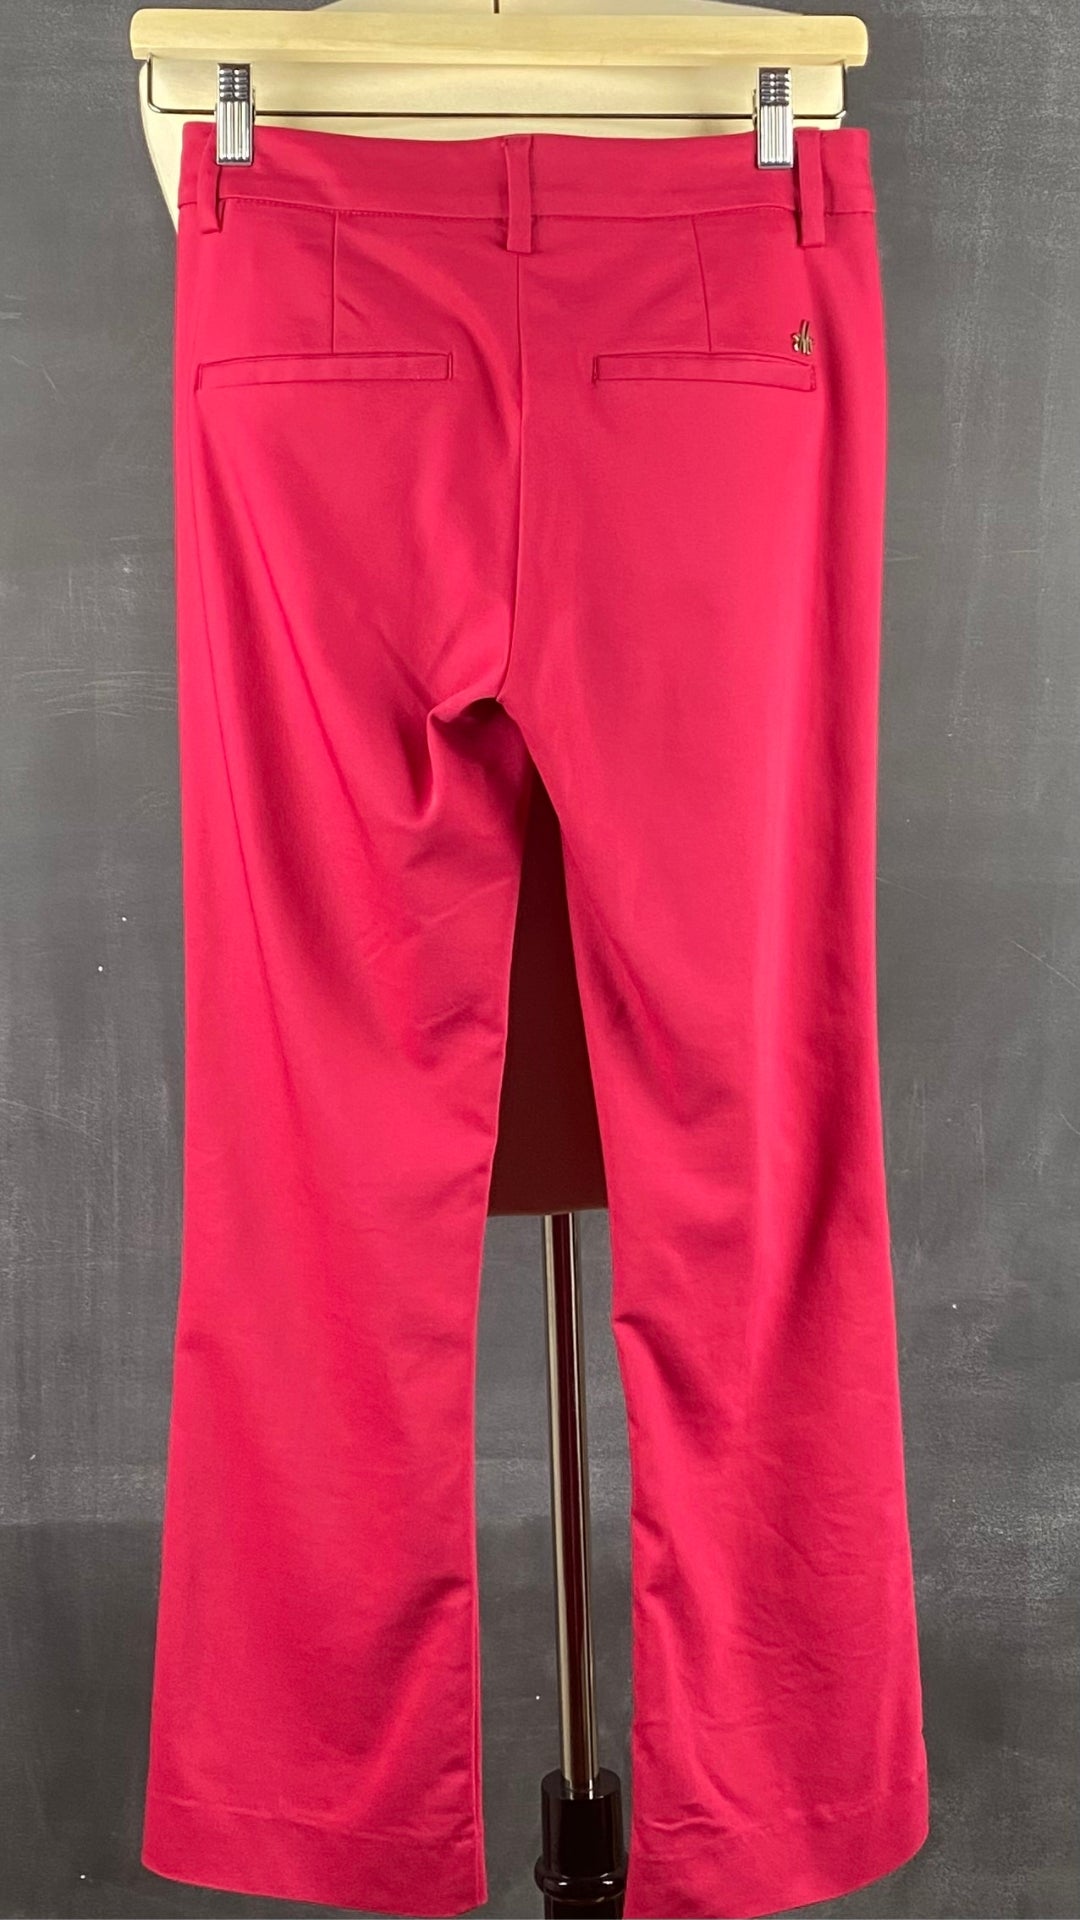 Pantalon écourté rose cerise Mos Mosh, taille 34 (européen - 25-xs). Vue de dos.